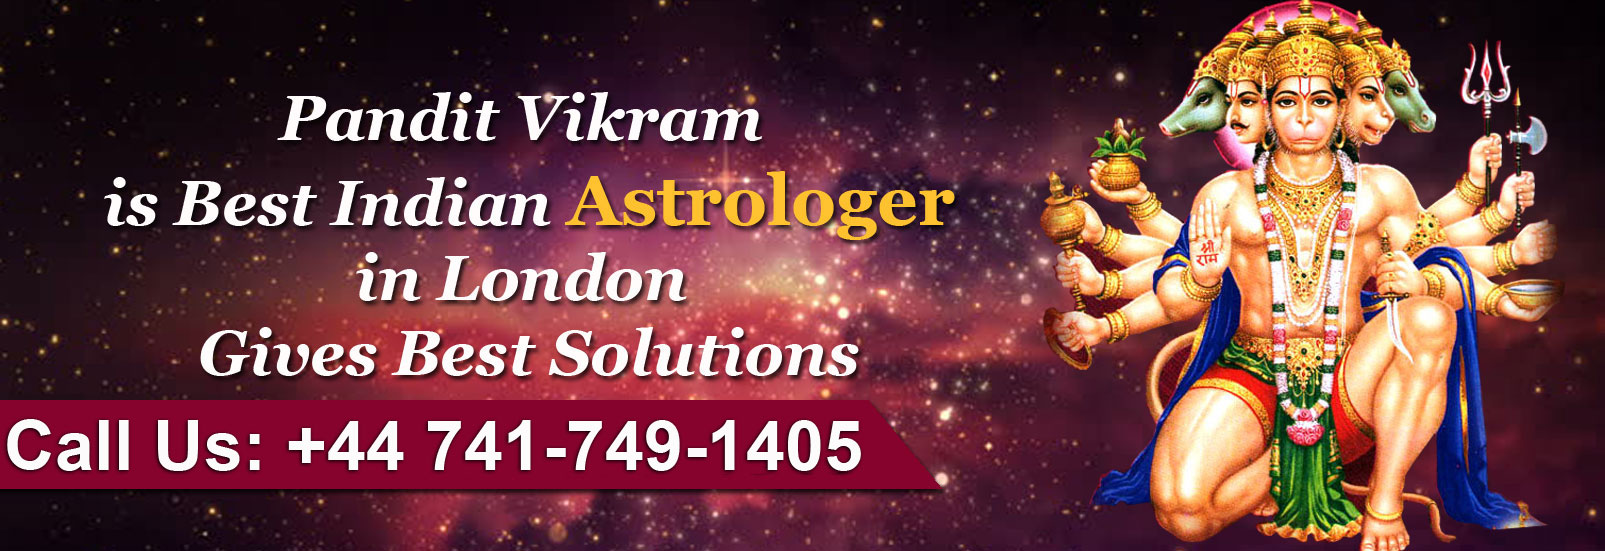 Pandit Vikram Astrology Services Banner